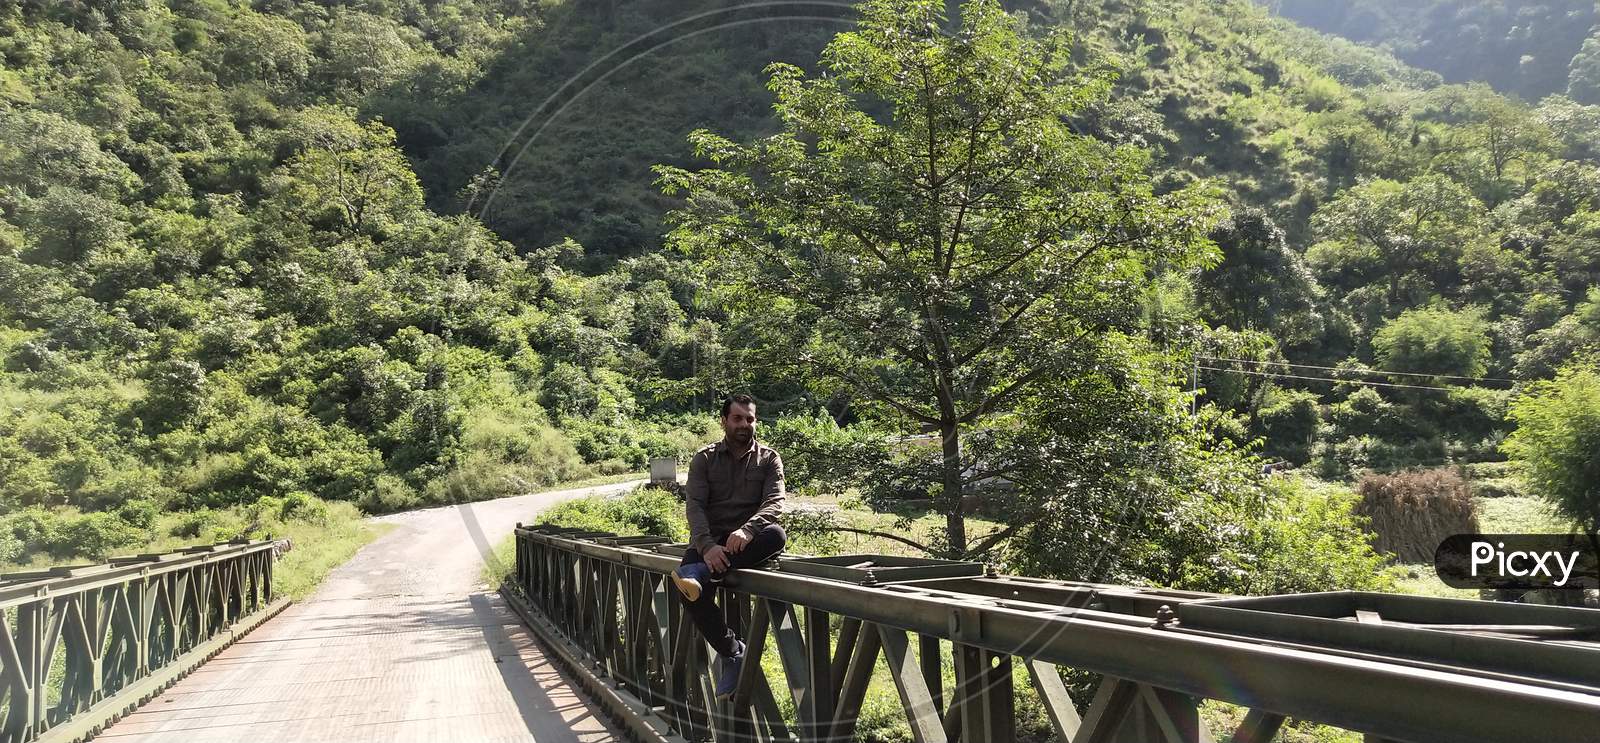 Man sitting on bridge with greenery